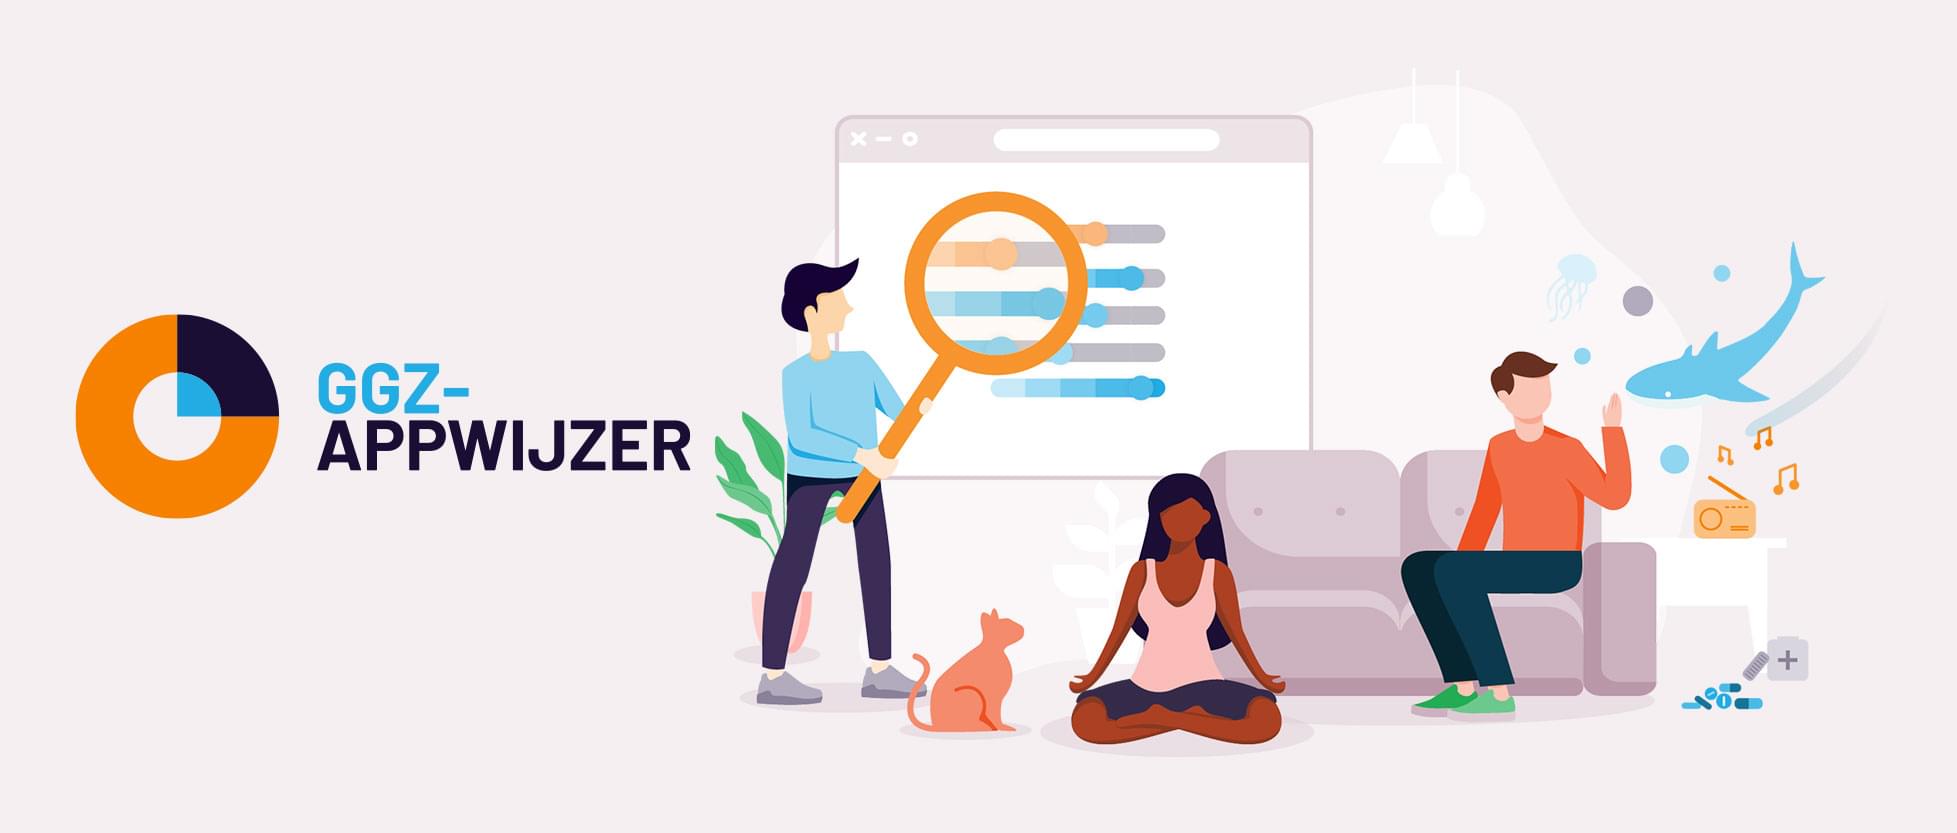 GGZ Appwijzer - De Ggz appwijzer is een website, die helpt bij het vinden van app’s. Alle apps in deze website krijgen een Mindex-score. Deze score draagt bij bij het vinden van de juiste app.